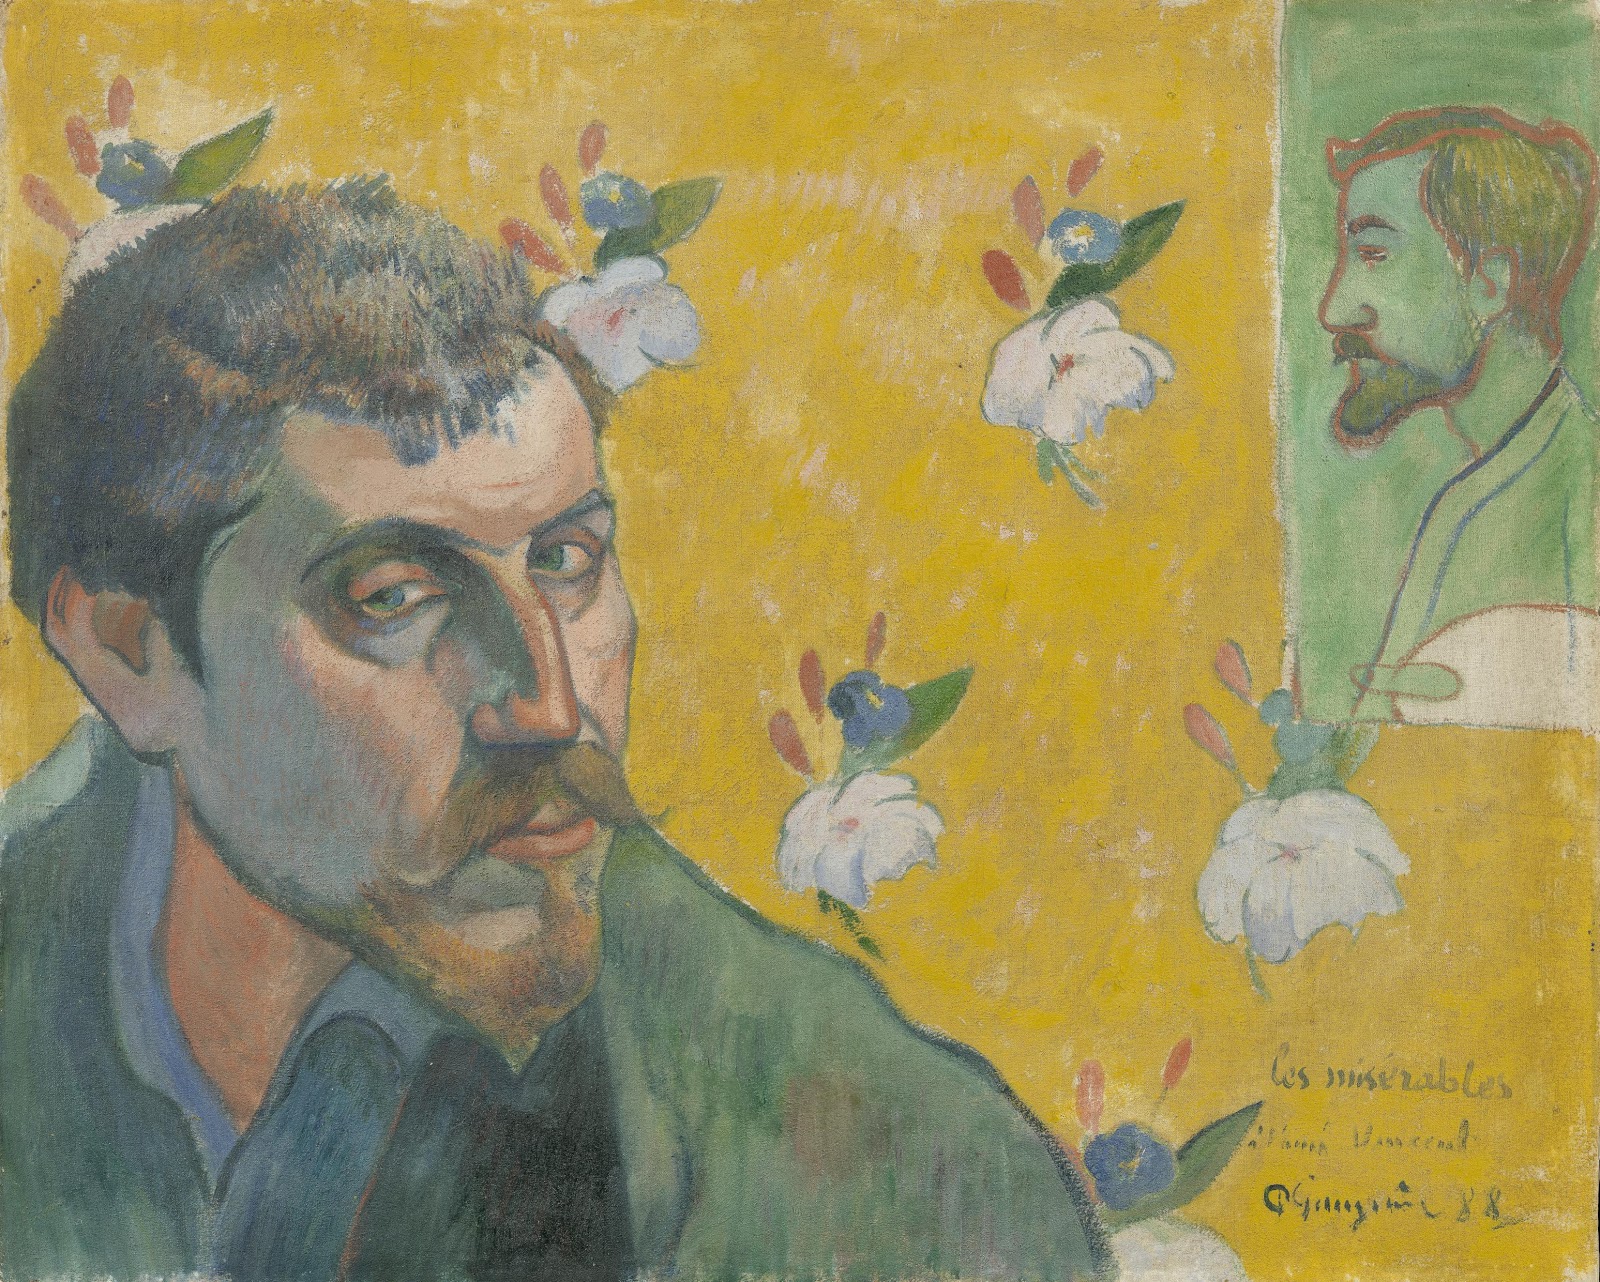 Paul+Gauguin-1848-1903 (488).jpg